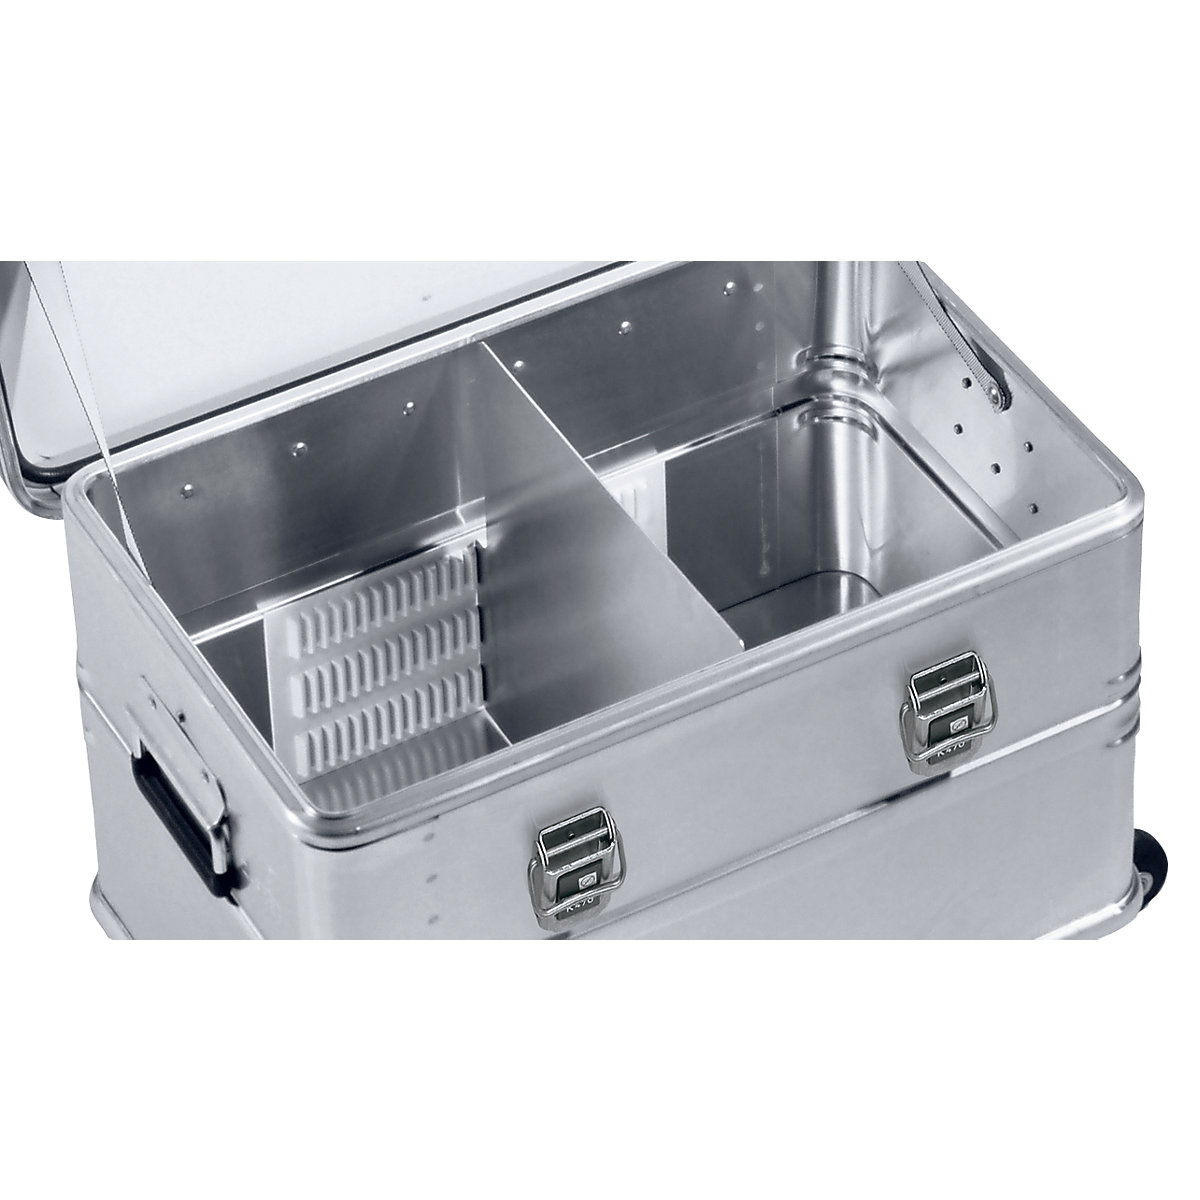 Sistema de separadores para cajas Combi de aluminio - ZARGES